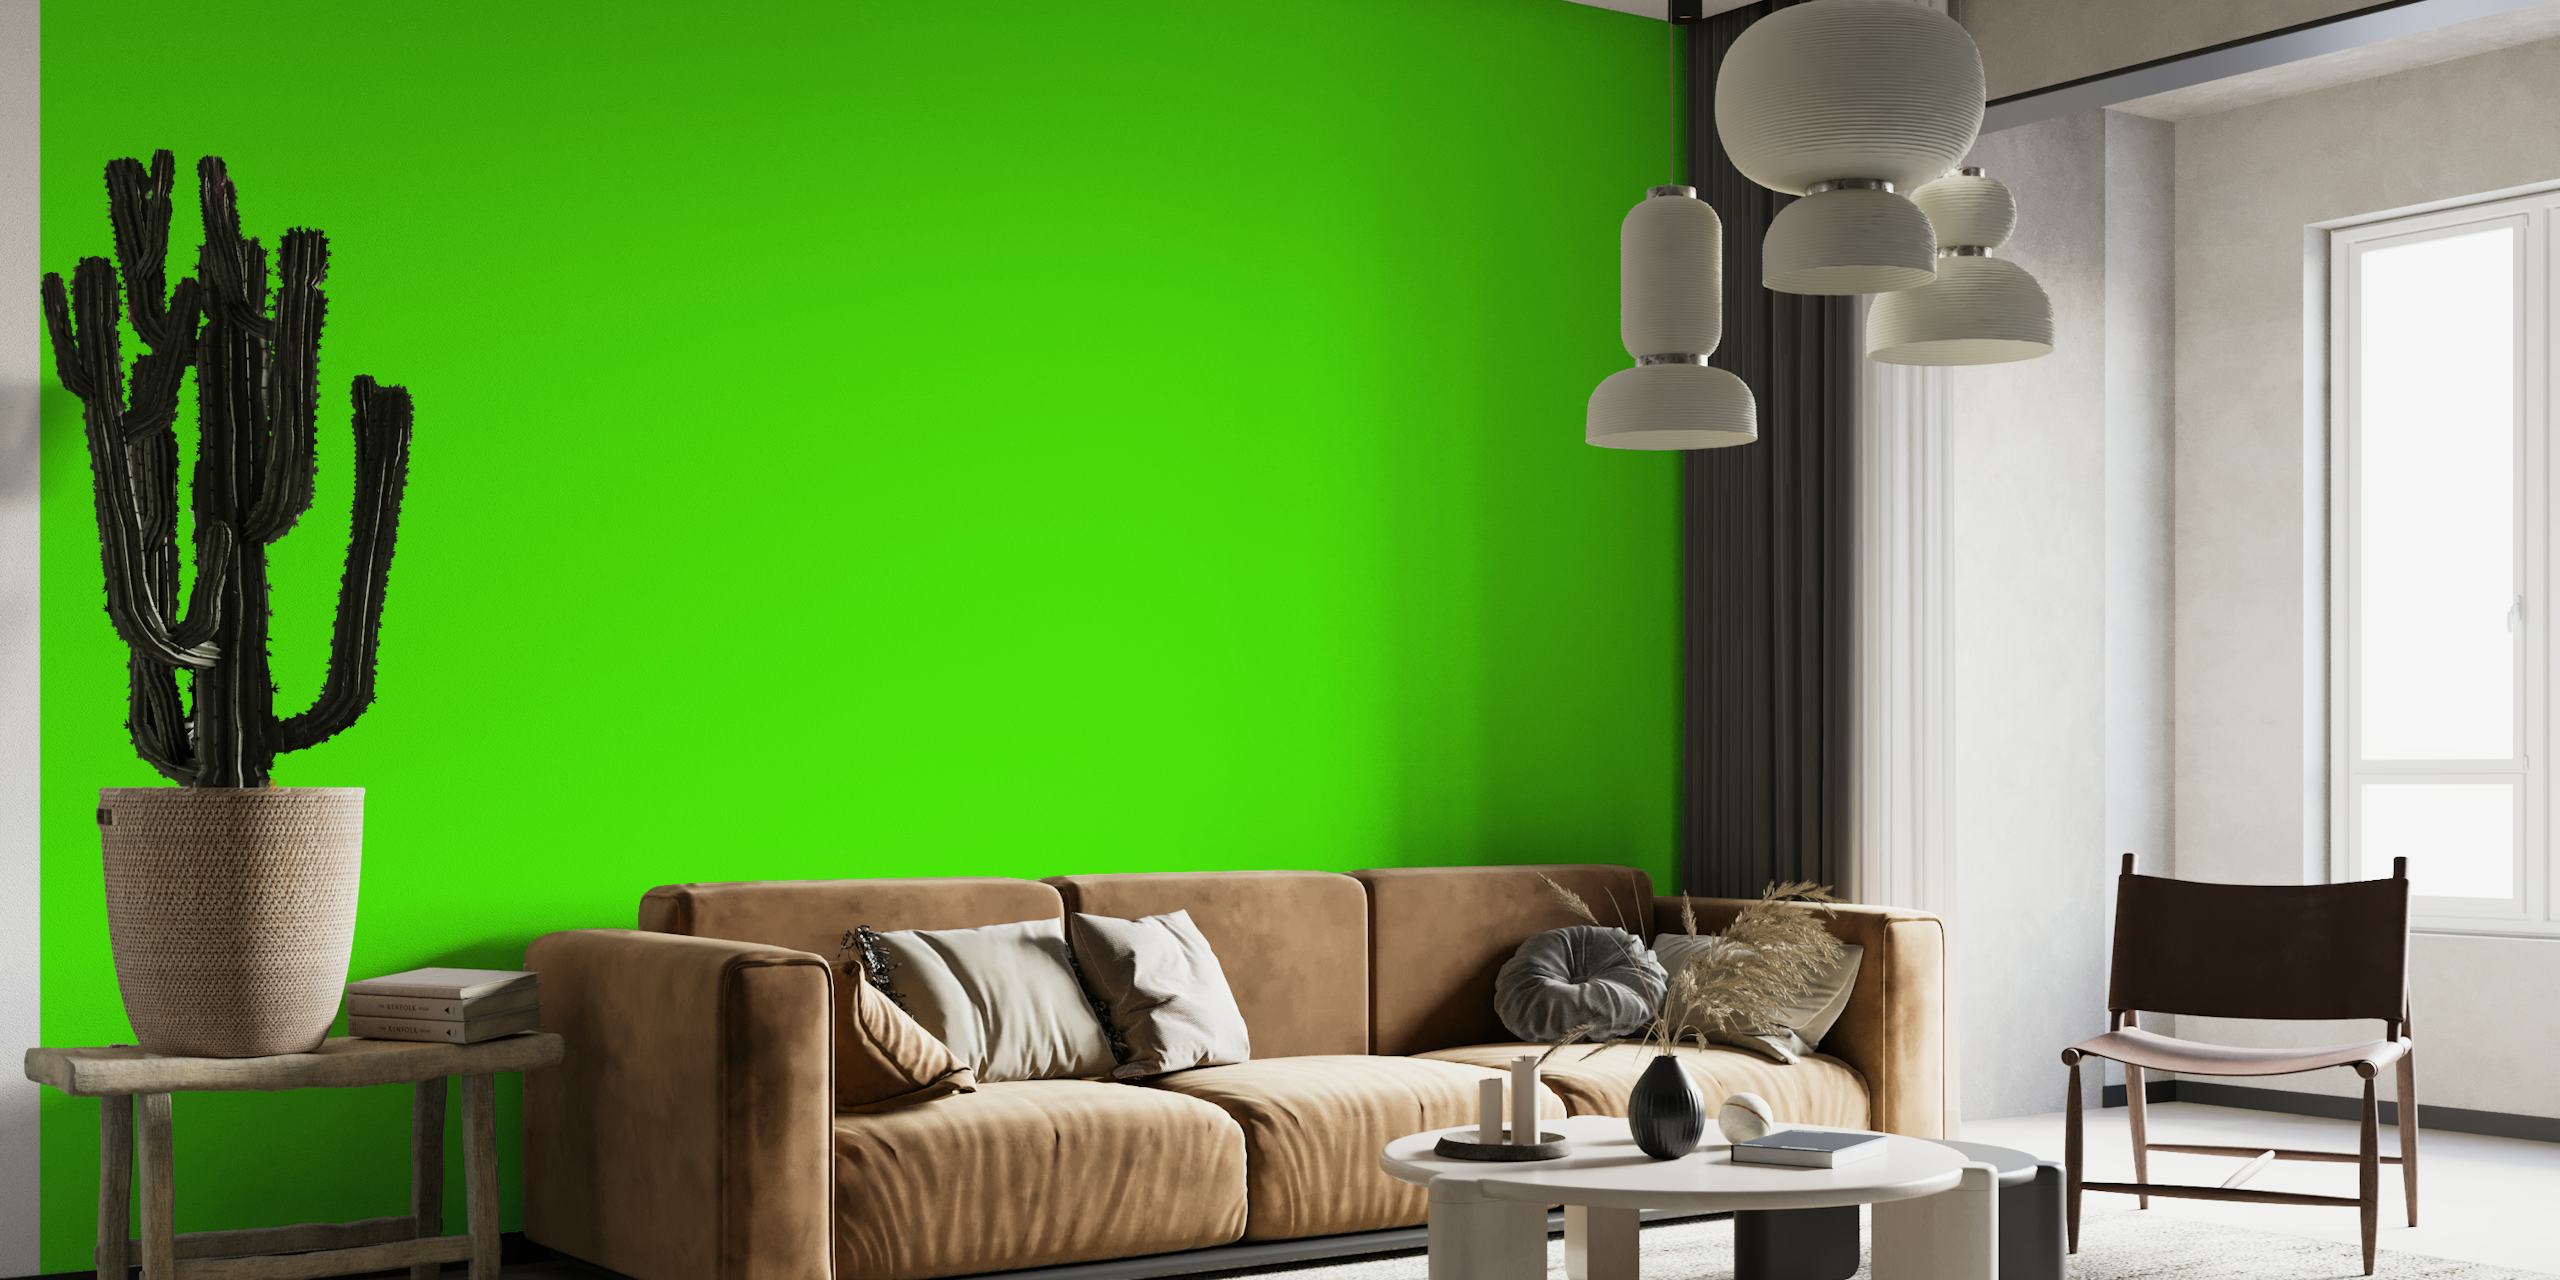 Mural de pared verde vibrante que crea una atmósfera inspirada en la naturaleza